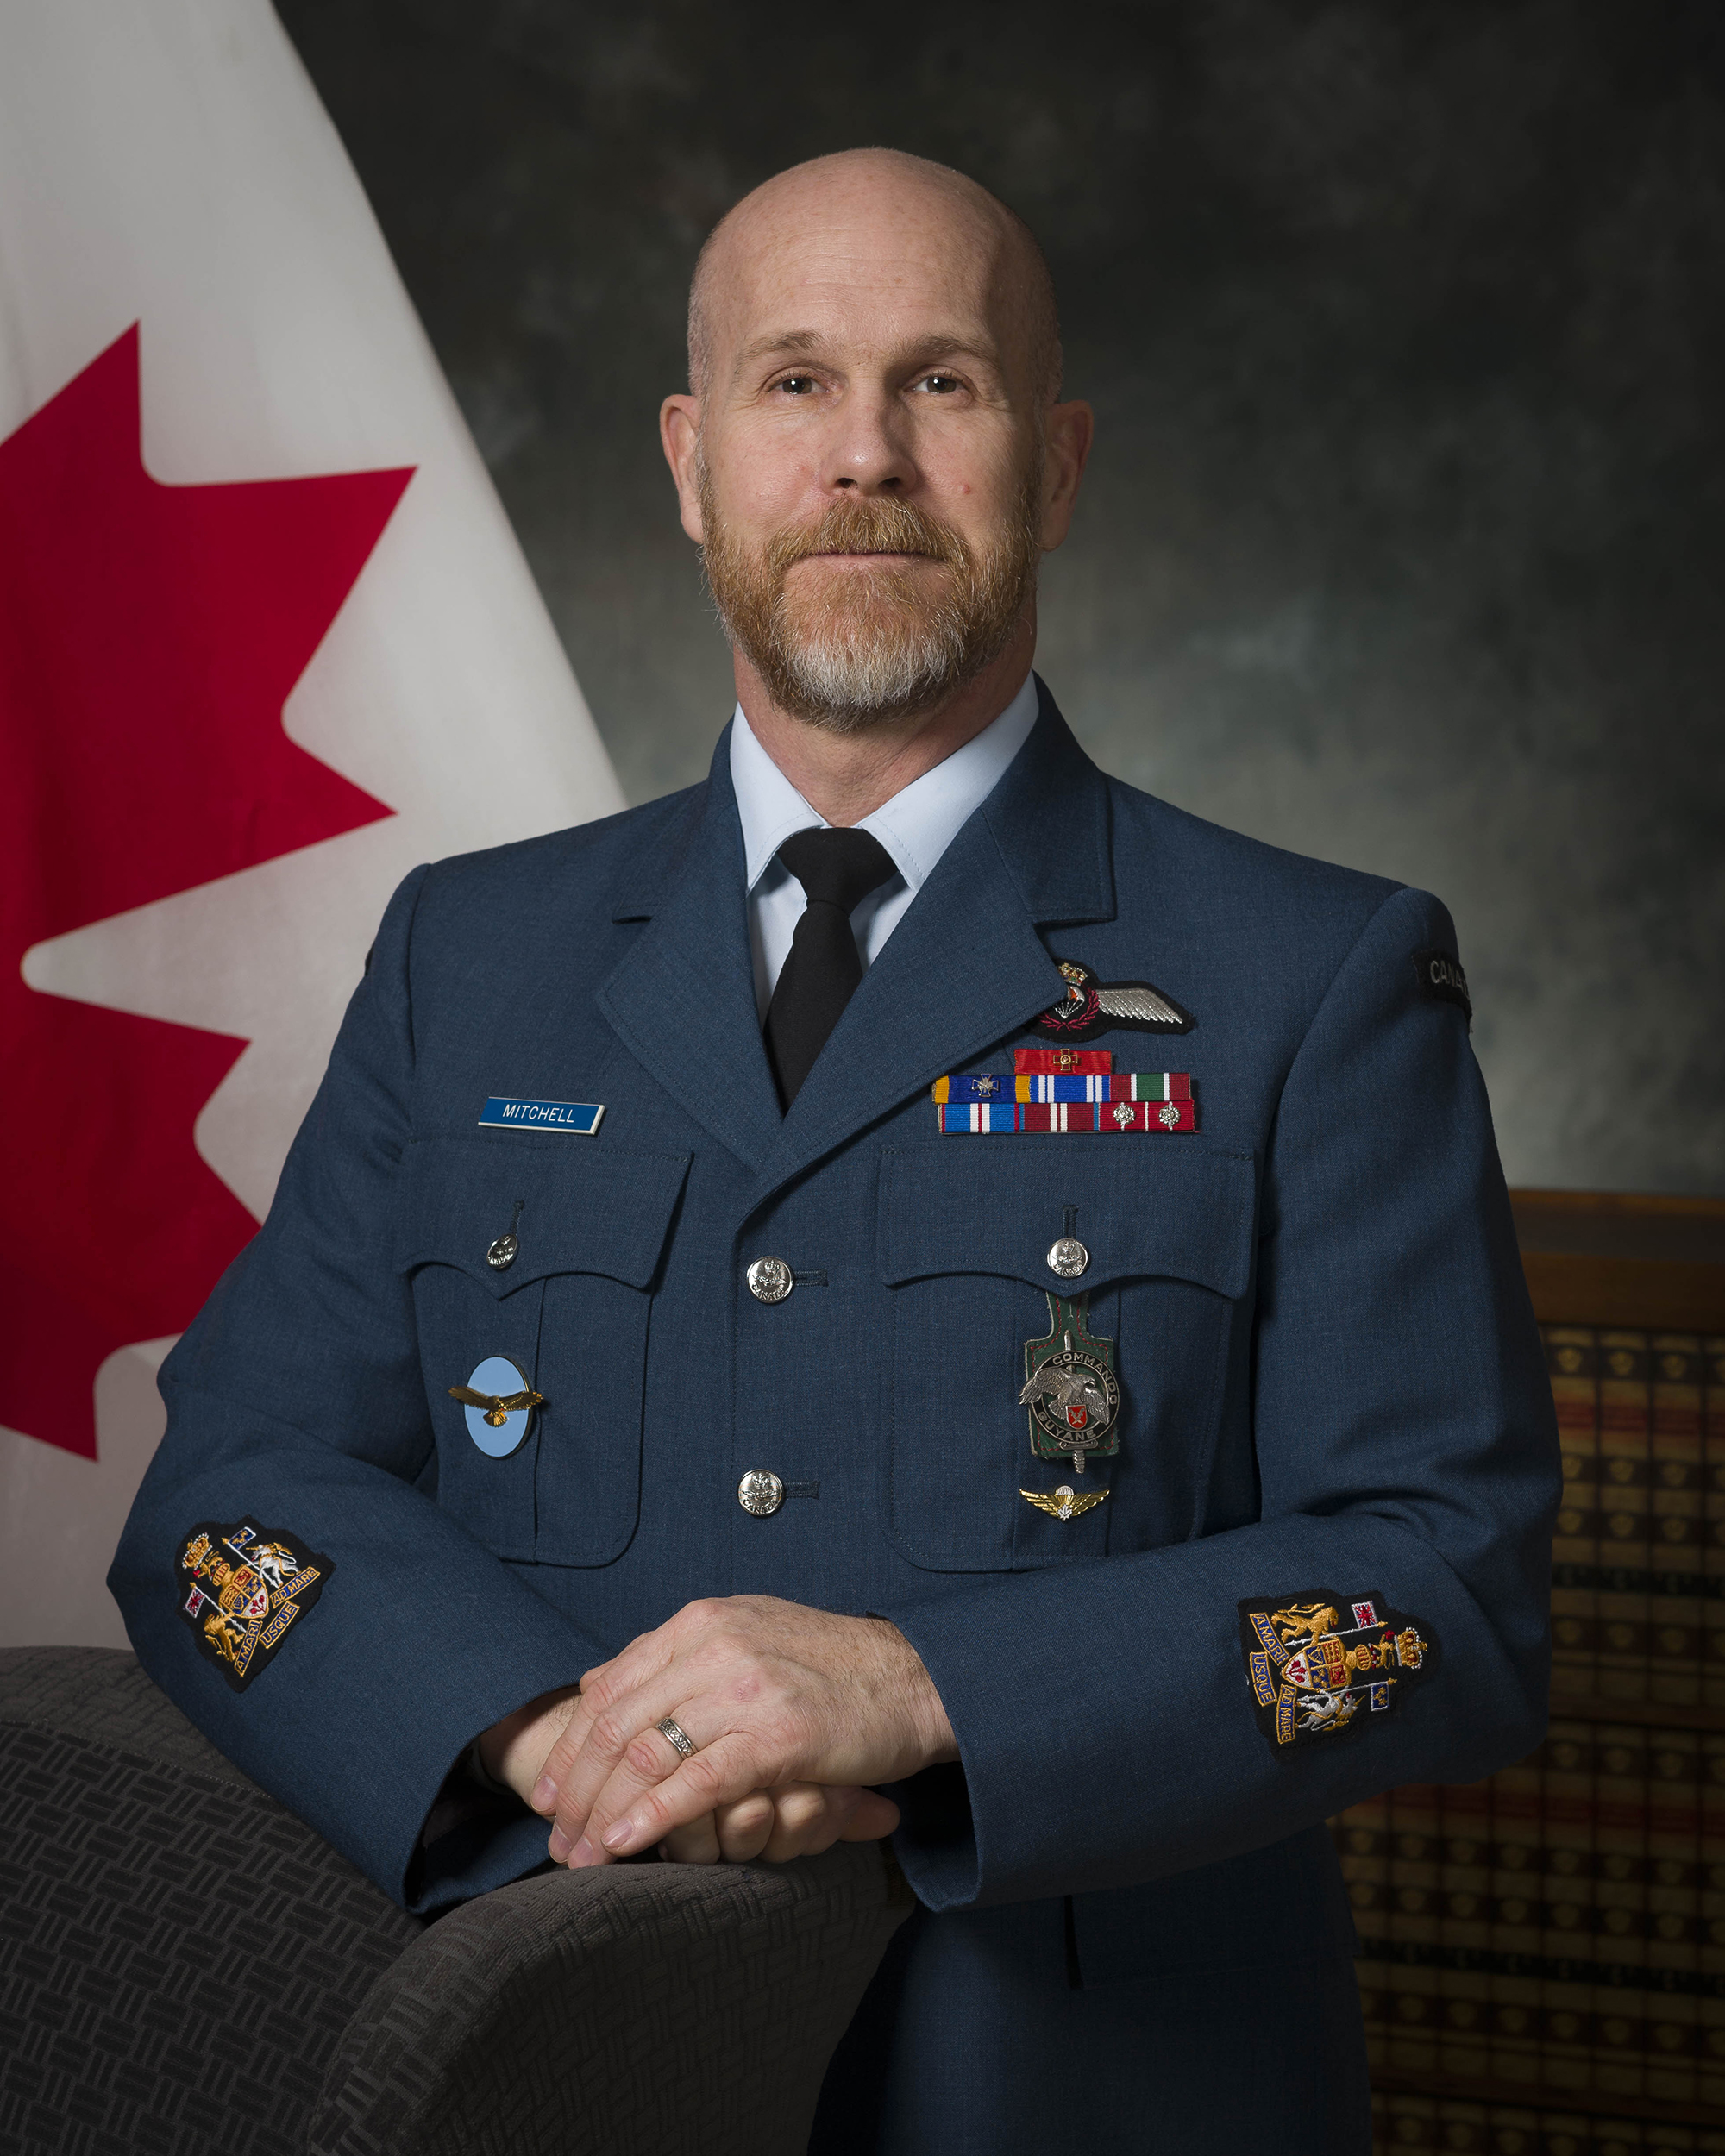 Une photo d’un homme portant un uniforme militaire bleu assorti de médailles. À l’arrière, on voit un drapeau canadien.